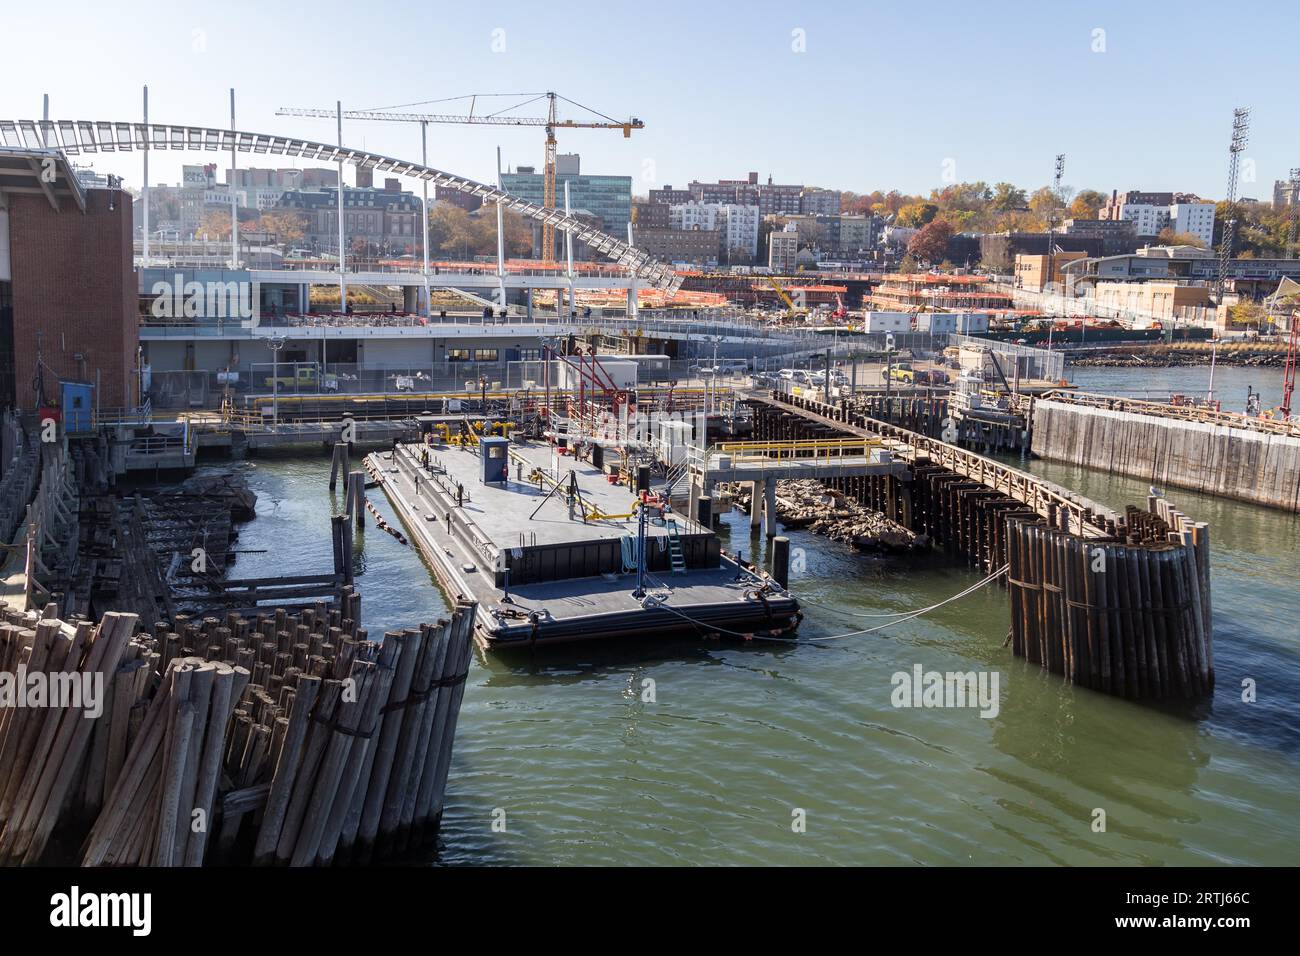 Staten Island, Vereinigte Staaten von Amerika, 18. November 2016: Ein Ölkahn, der in einem Dock auf Staten Island verankert ist Stockfoto